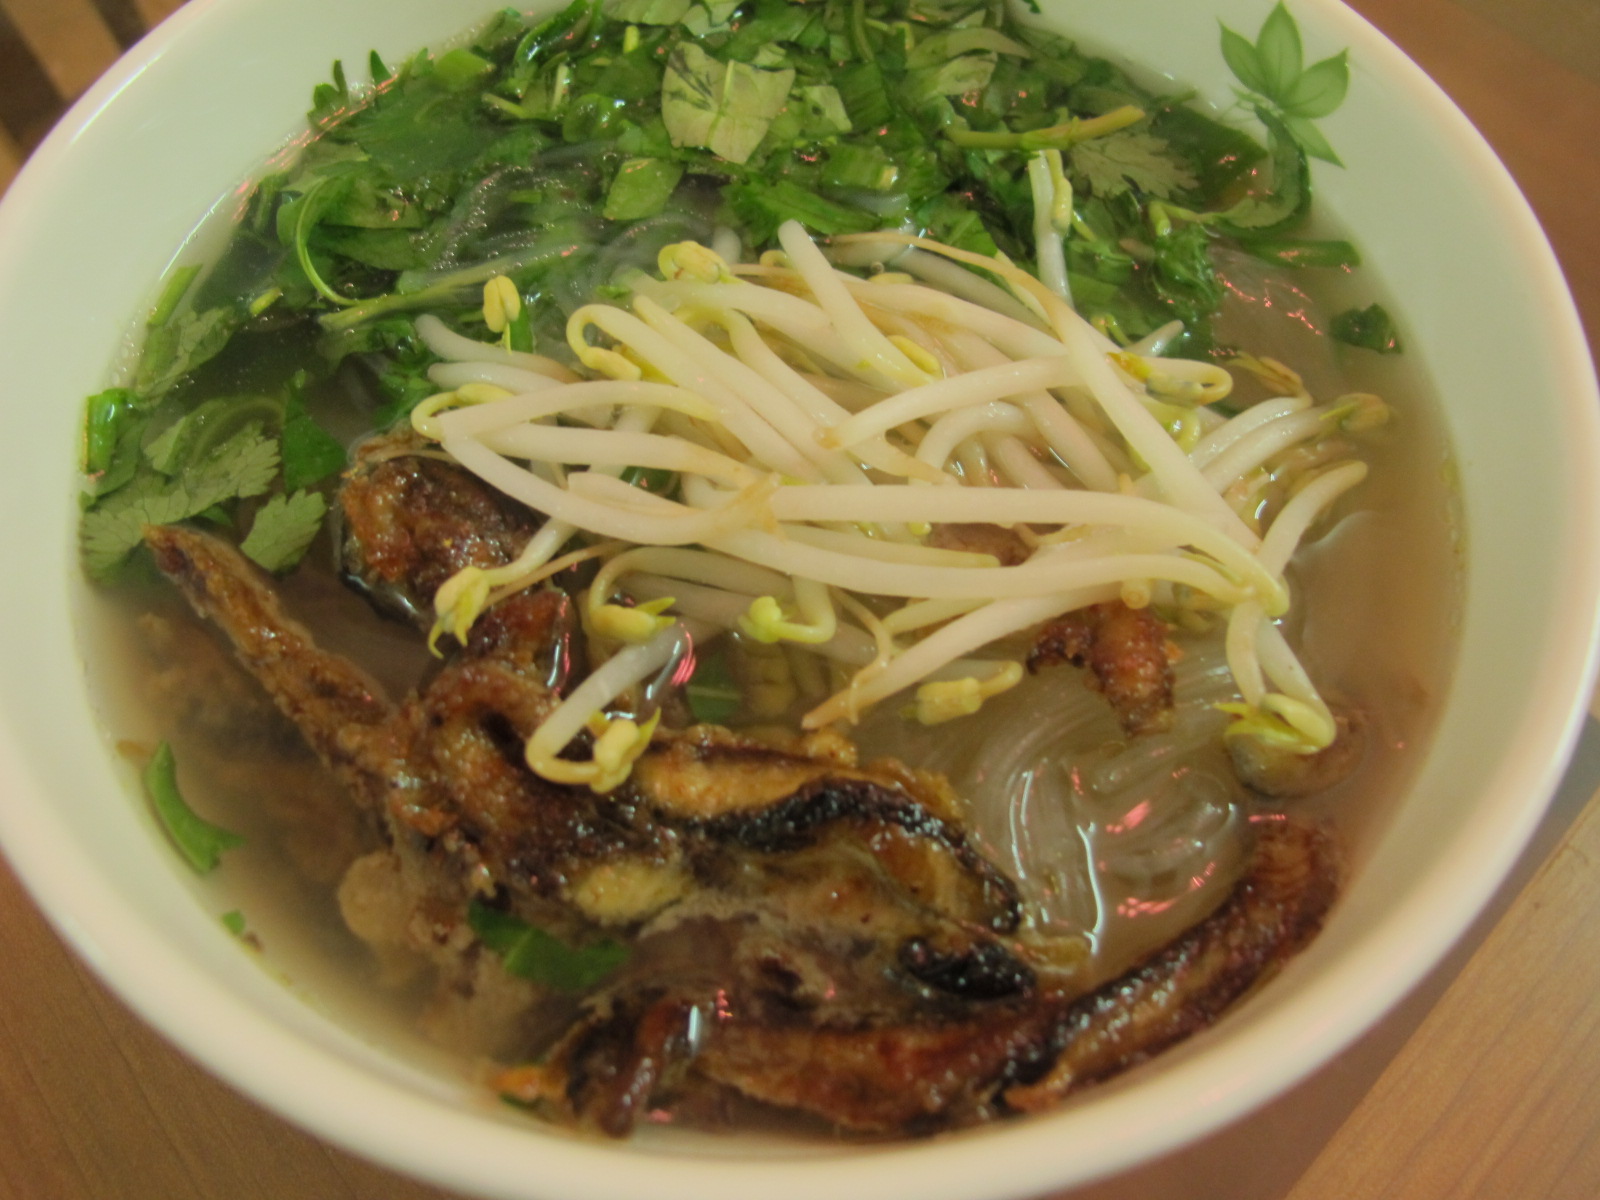 Miến lươn là một trong những món ăn ngon được yêu thích ở Hà Nội